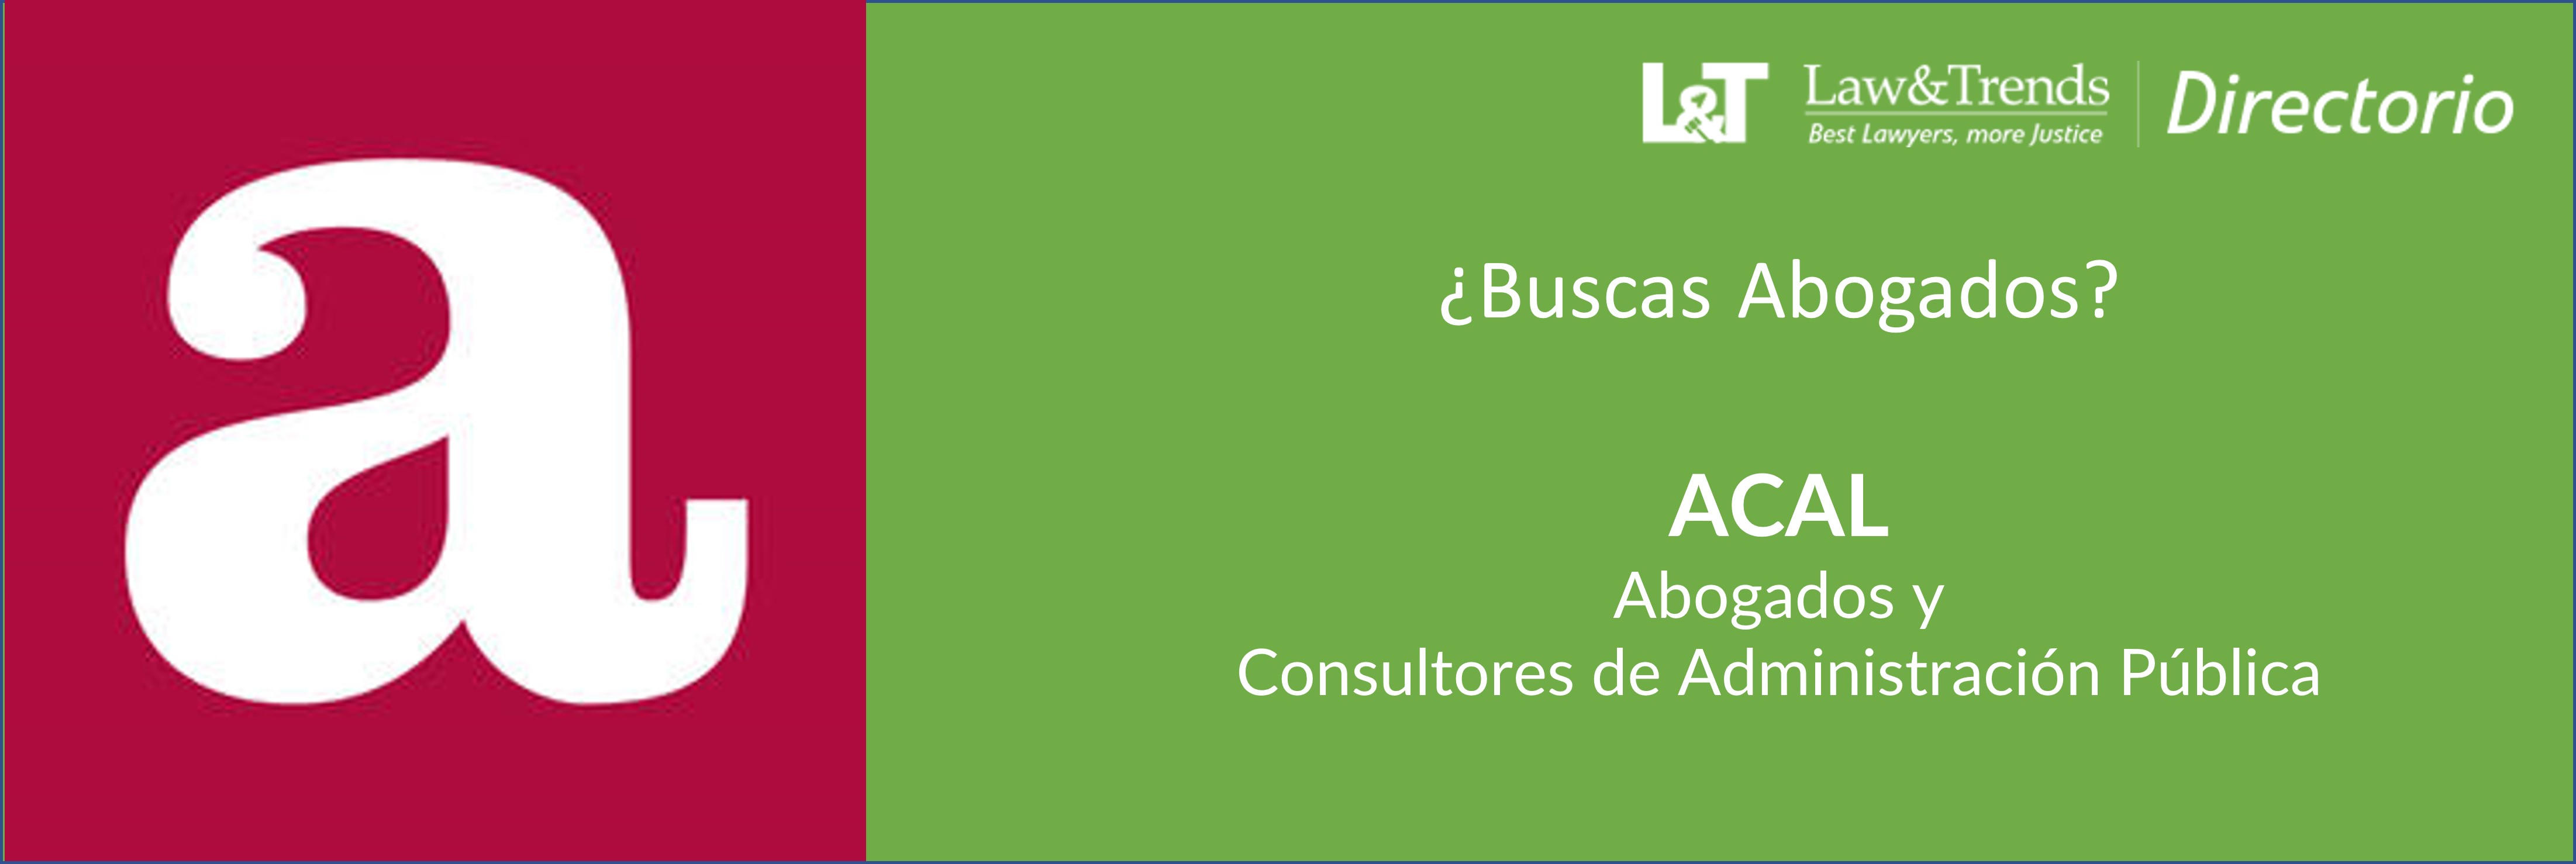 ACAL Abogados y Consultores de Administración Pública Madrid
